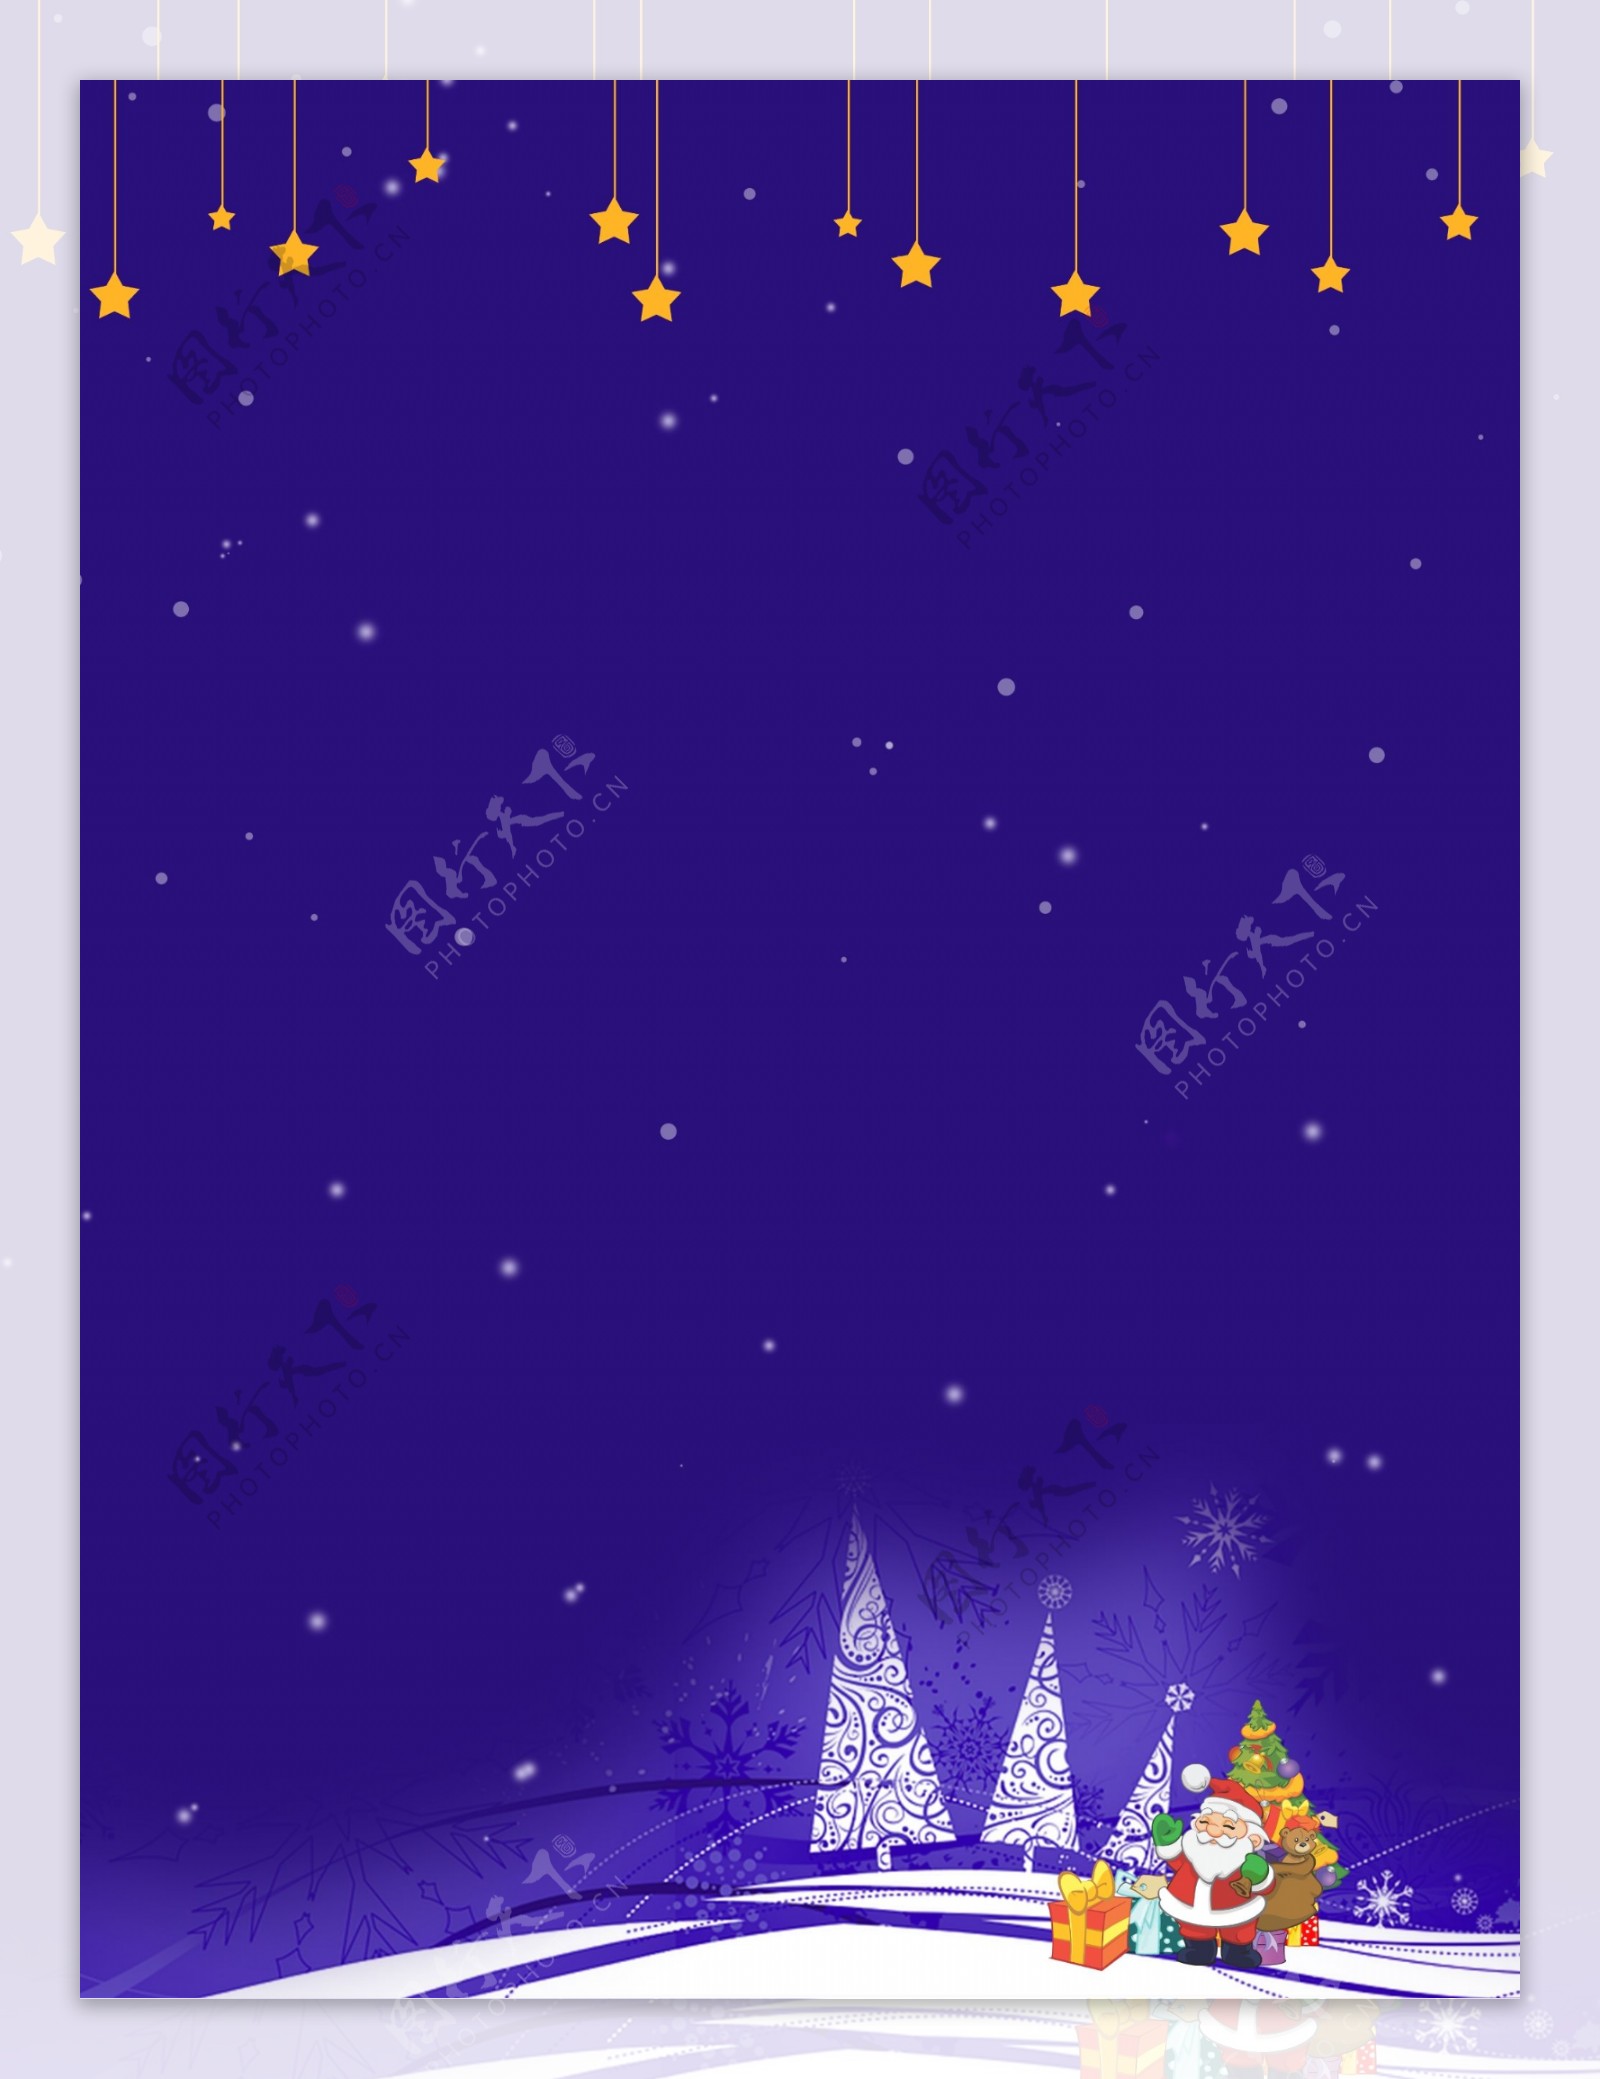 唯美冬日圣诞节紫色背景